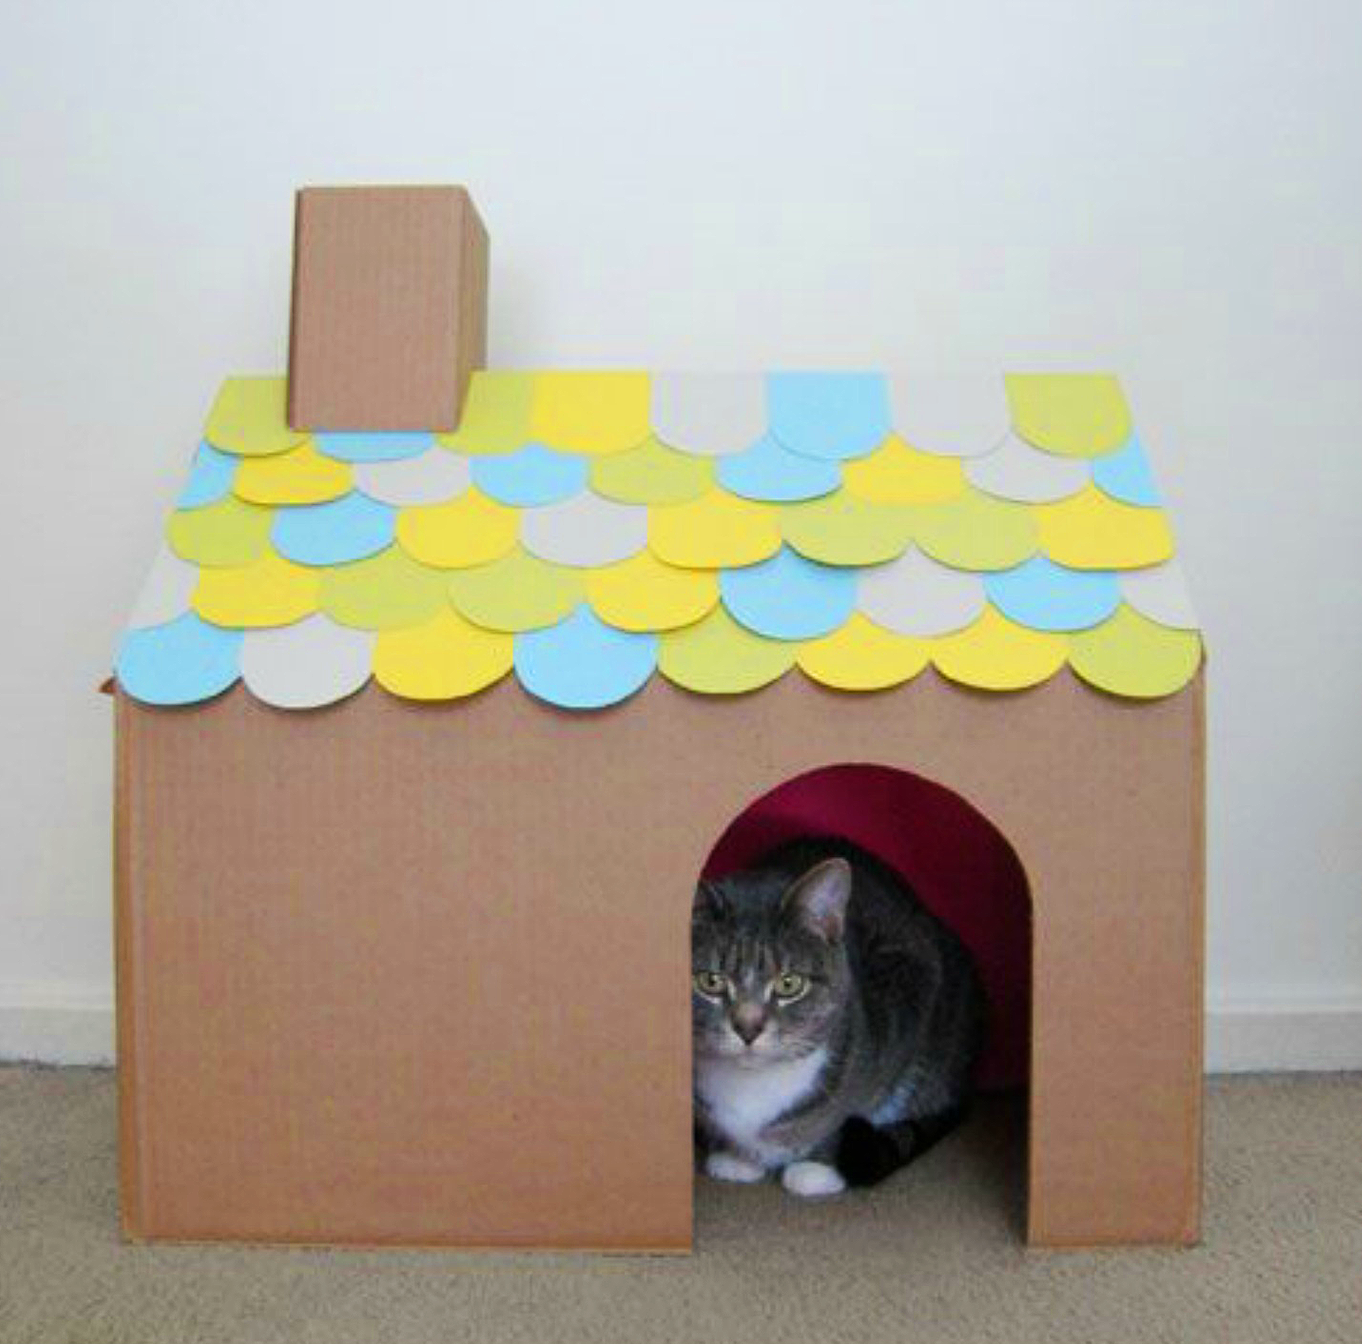 Как сделать из коробок домик для кошки: пошаговая инструкция по изготовлению домика для котов из картона и футболки